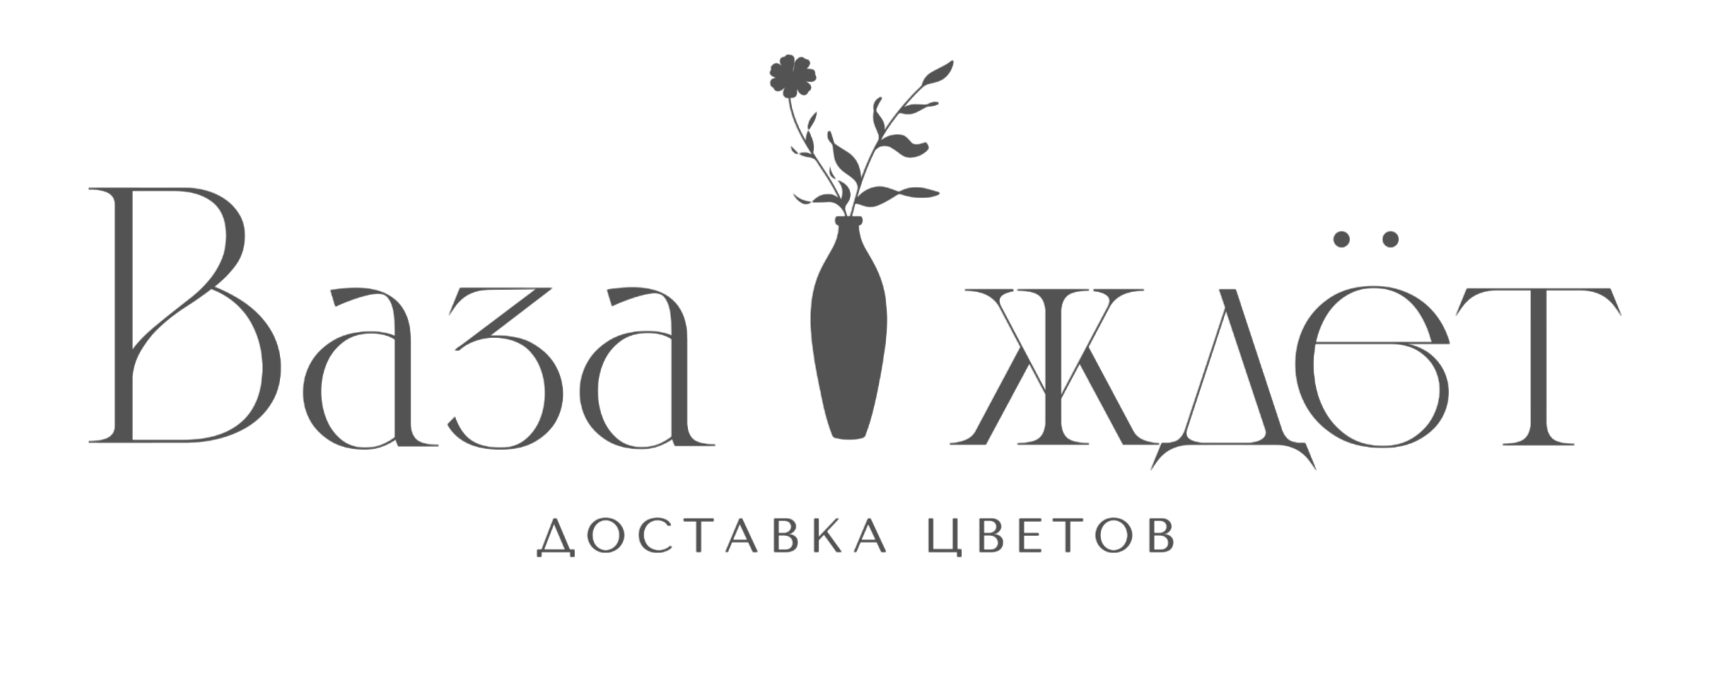 Интернет-магазин цветов «Ваза-Ждет»